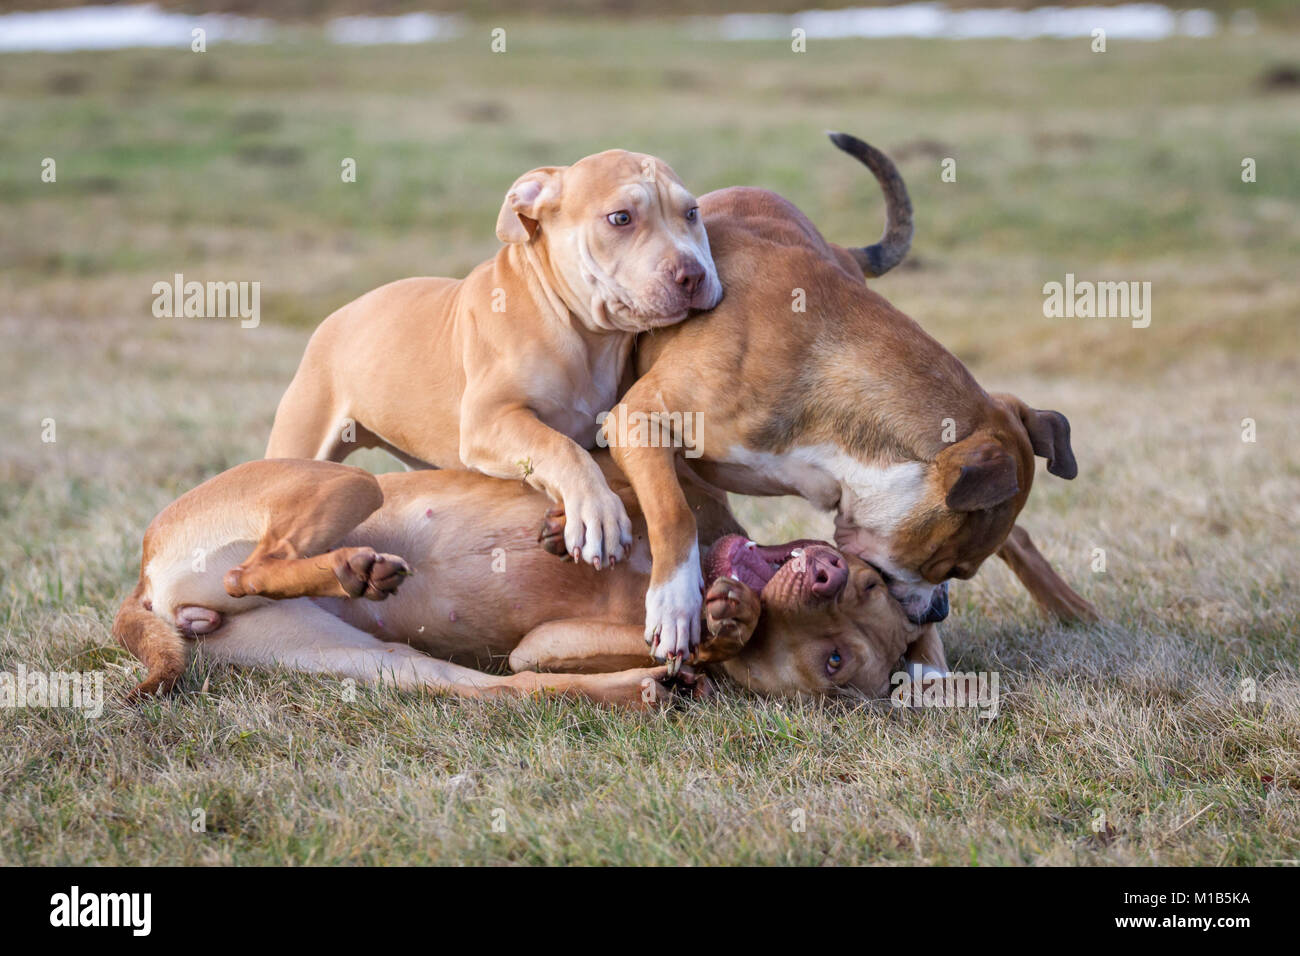 Groupe de chiens jouant sur une prairie (chien de type Bulldog et Bulldogs de travail) Banque D'Images